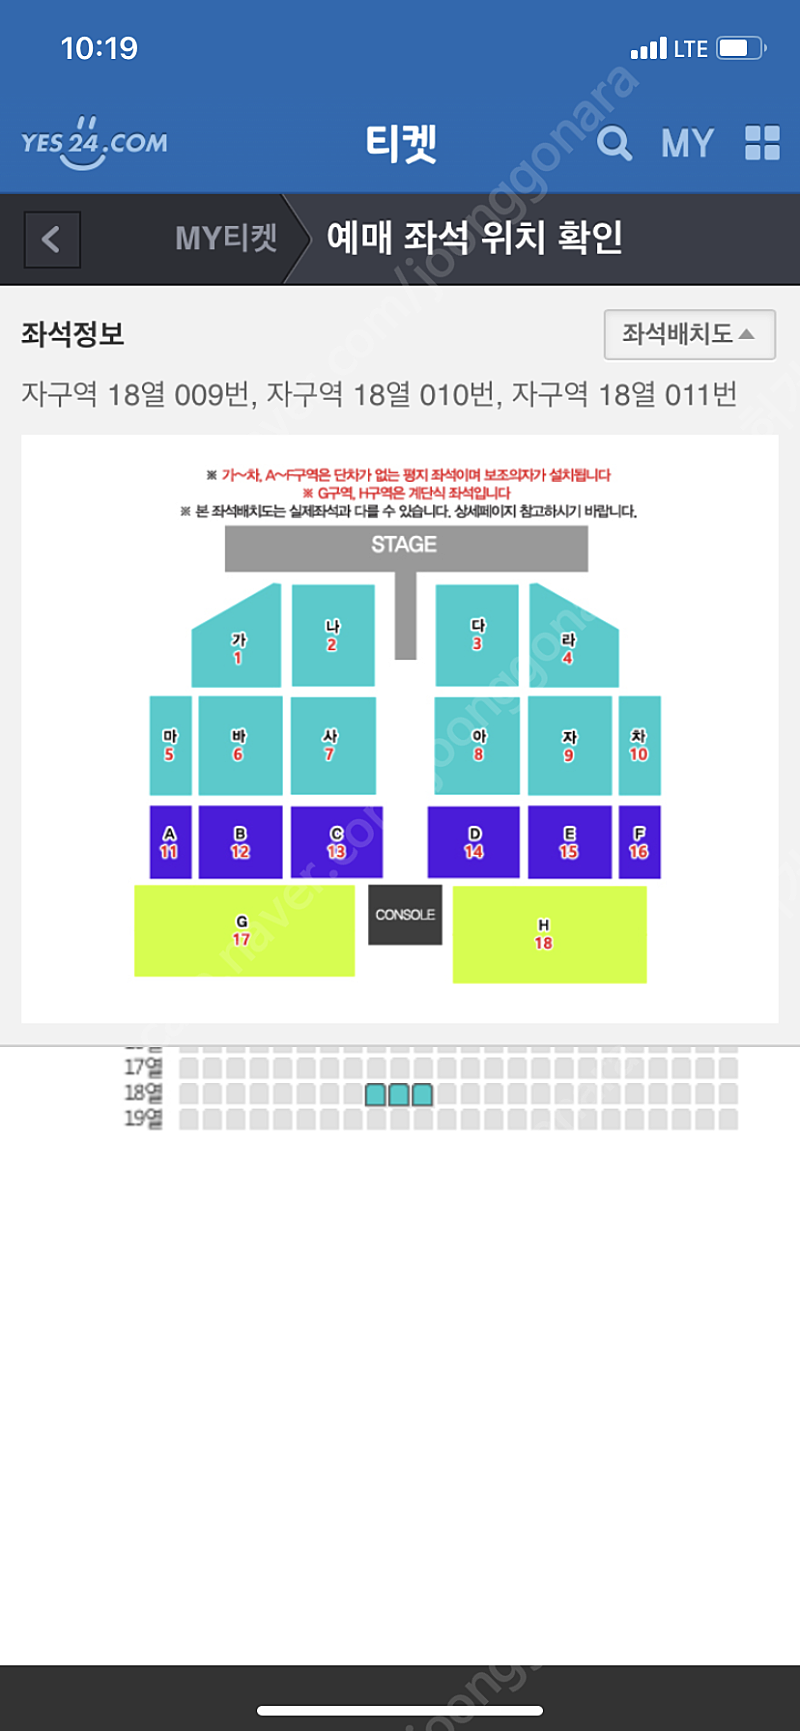 나훈아 부산콘서트 6월 11일 3시공연 3연석